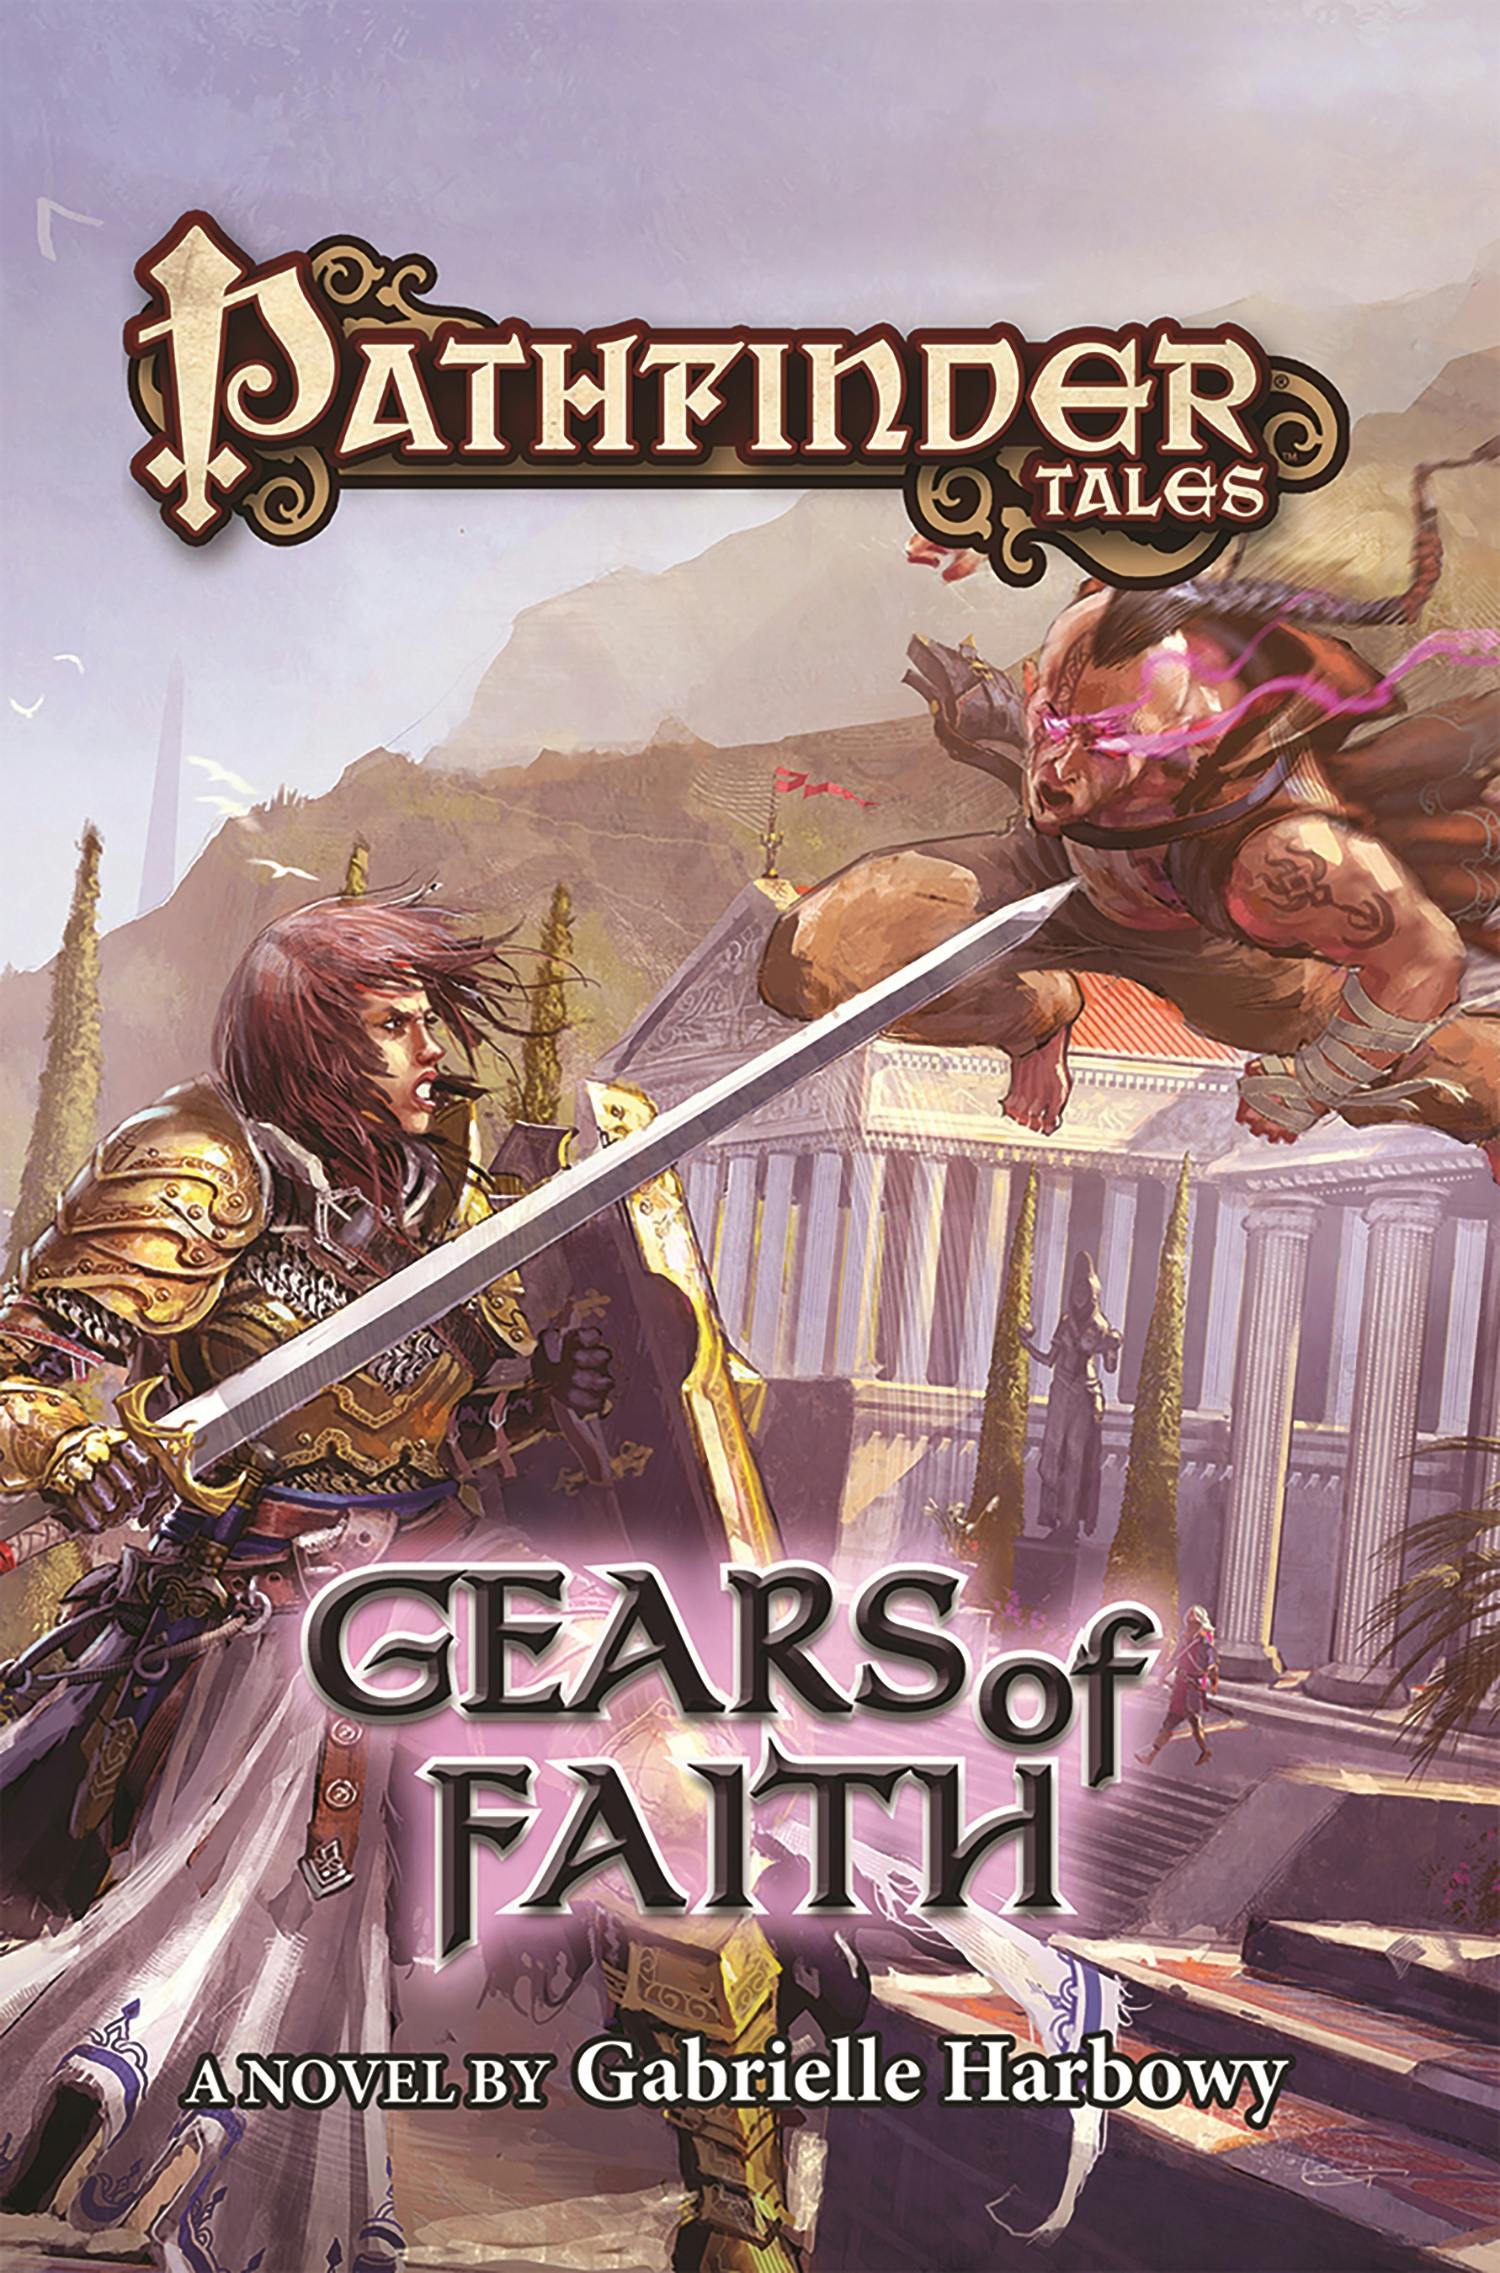 Pathfinder Tales: Gears of Faith